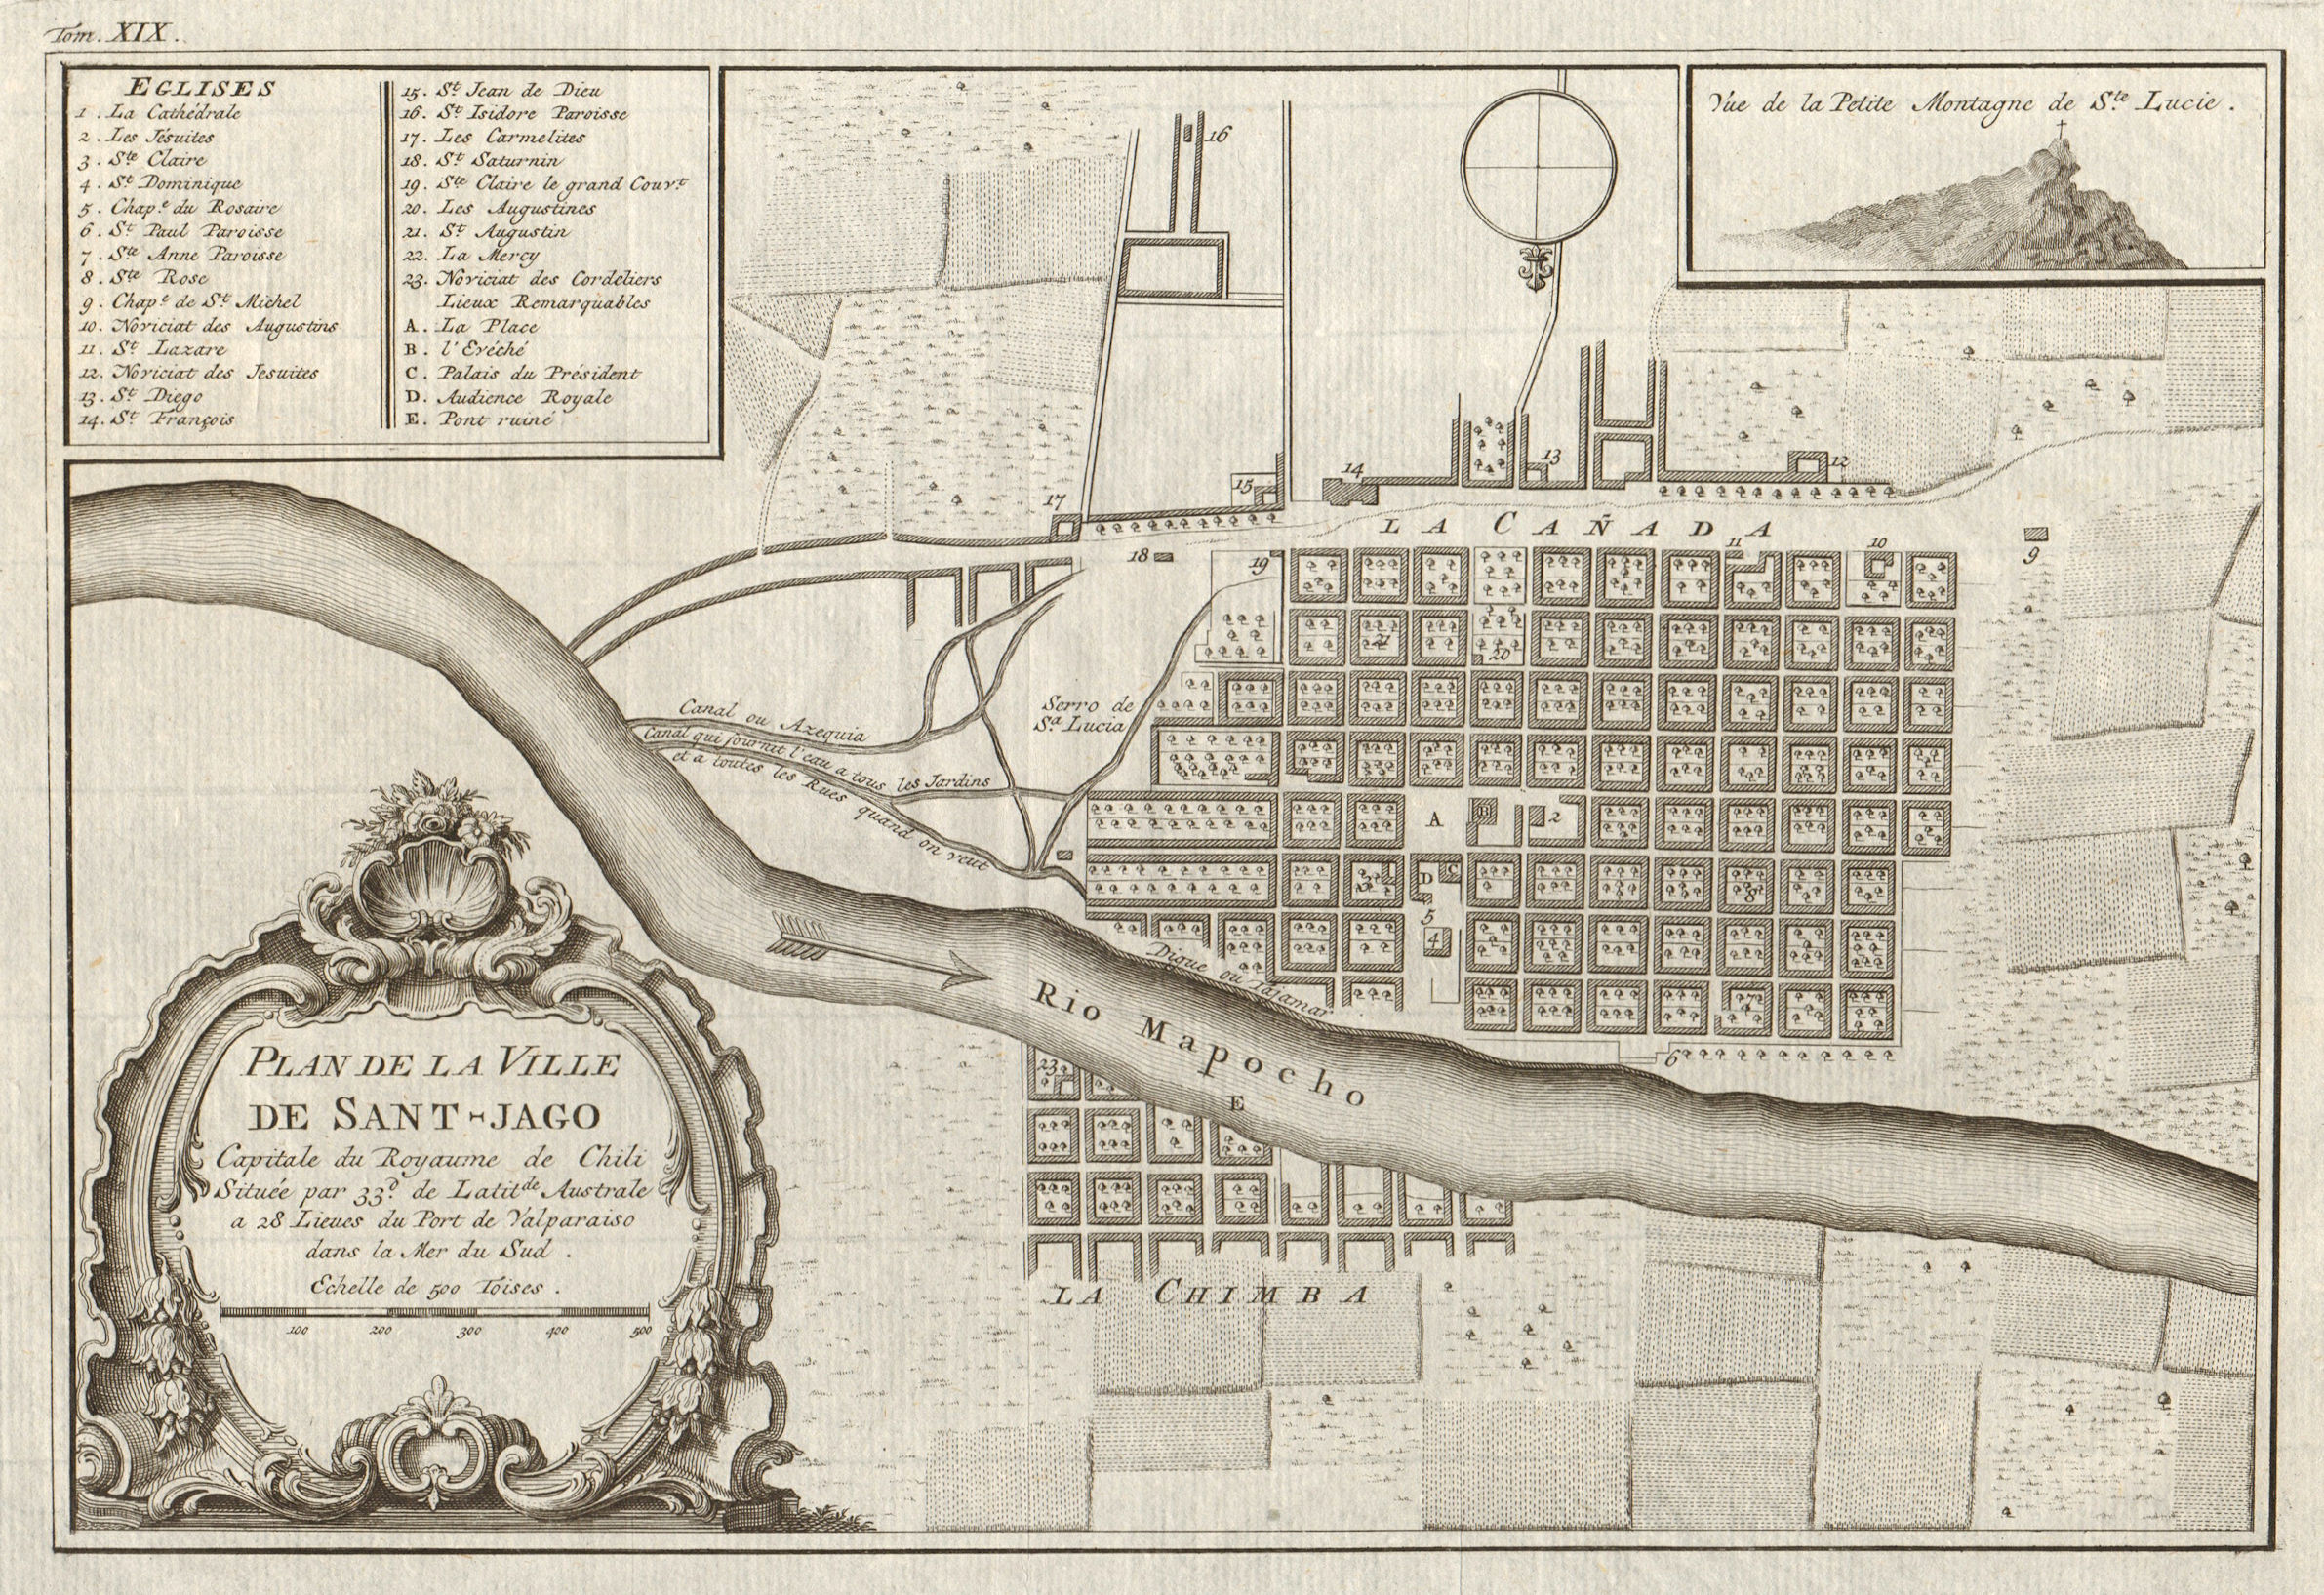 'Plan de la ville de Sant Jago du Chili'. Santiago Chile. BELLIN/SCHLEY 1772 map